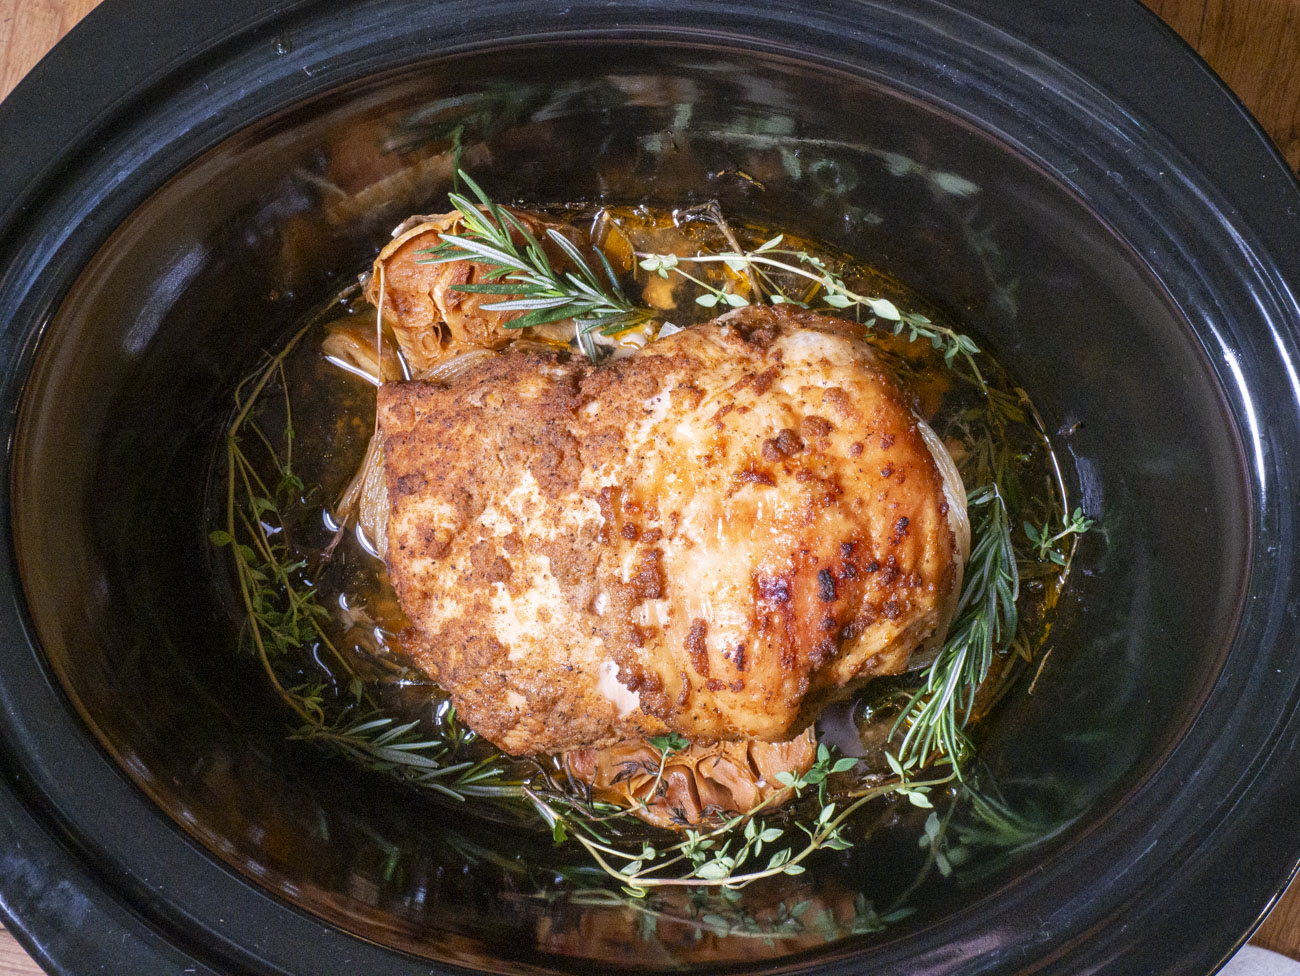 Slow Cooker Turkey Breast (Bone-In) - Plain Chicken